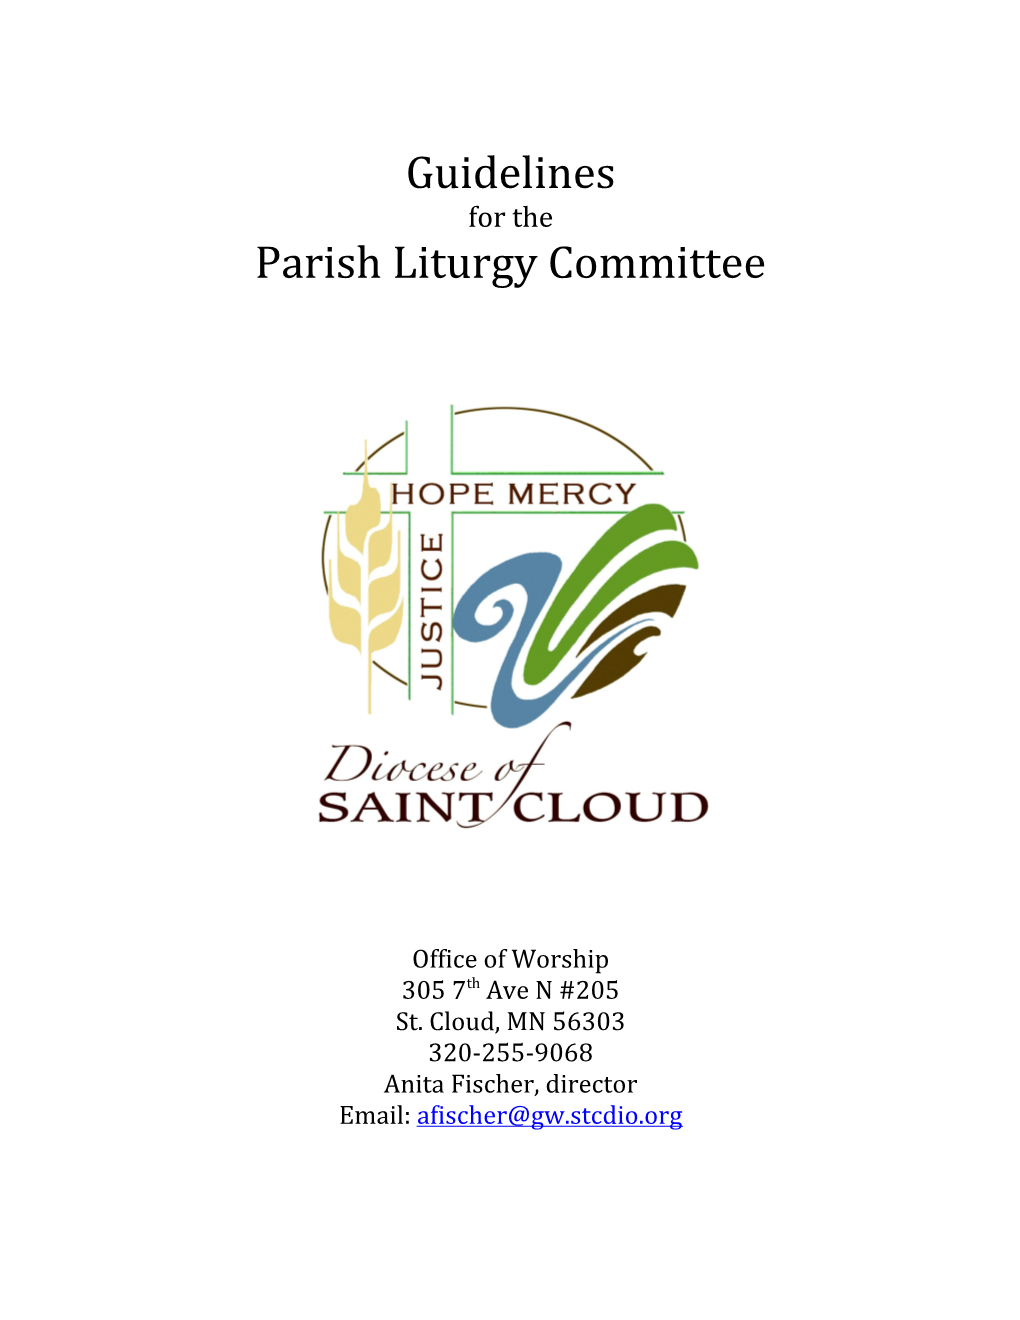 Parish Liturgy Committee